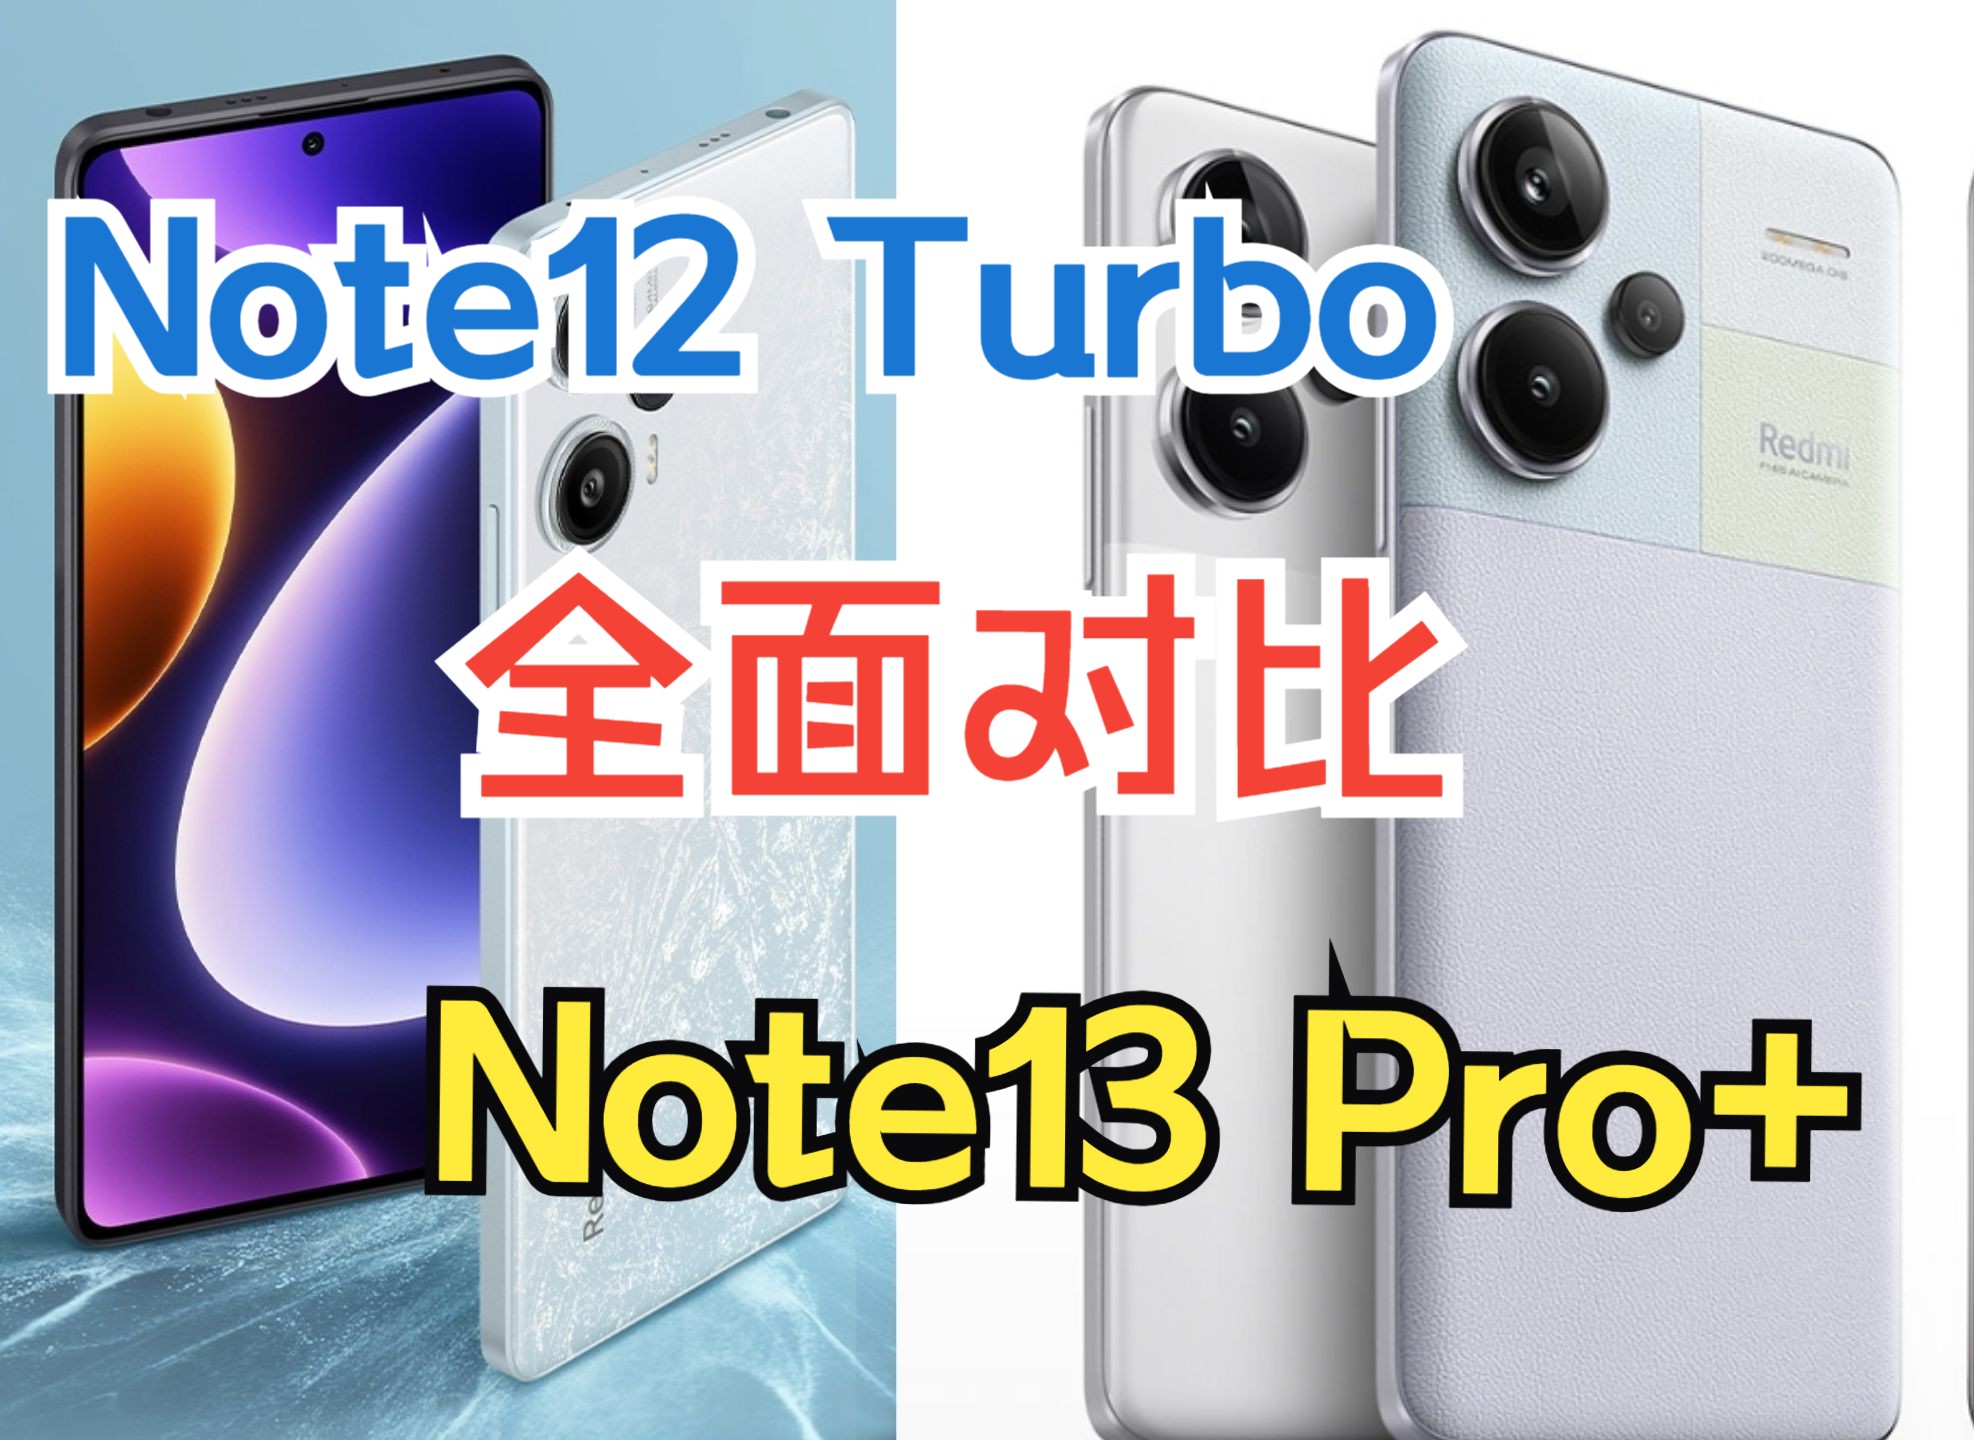 红米Note12 Turbo与Note13 Pro+全面对比及购买建议